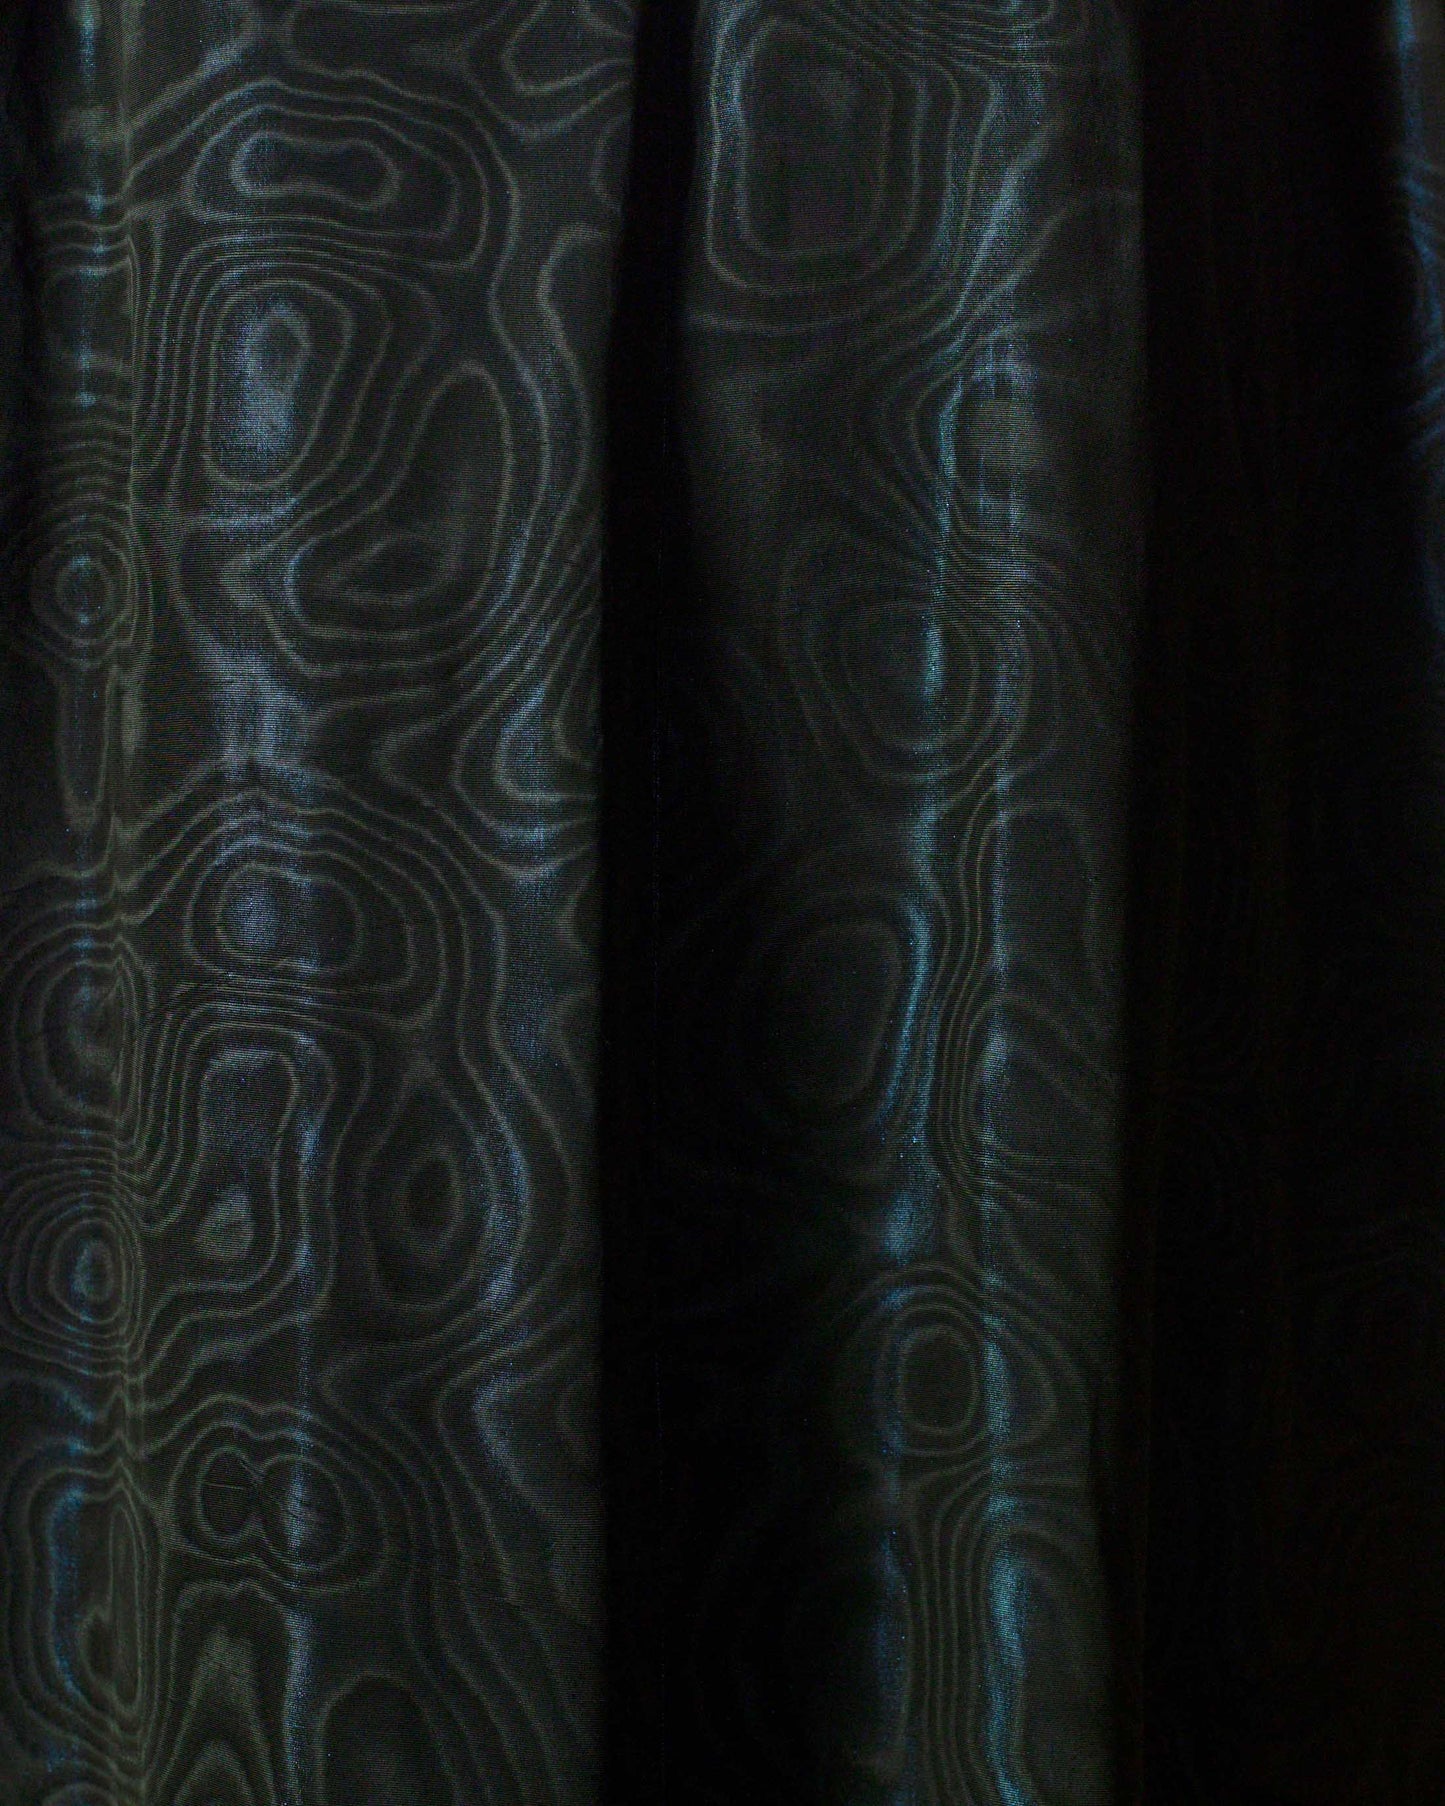 FALLON-robe-saintlaurentrivegauche-noir-bleu-satin-vintage-luxe-rare-mode-collection-femme00005